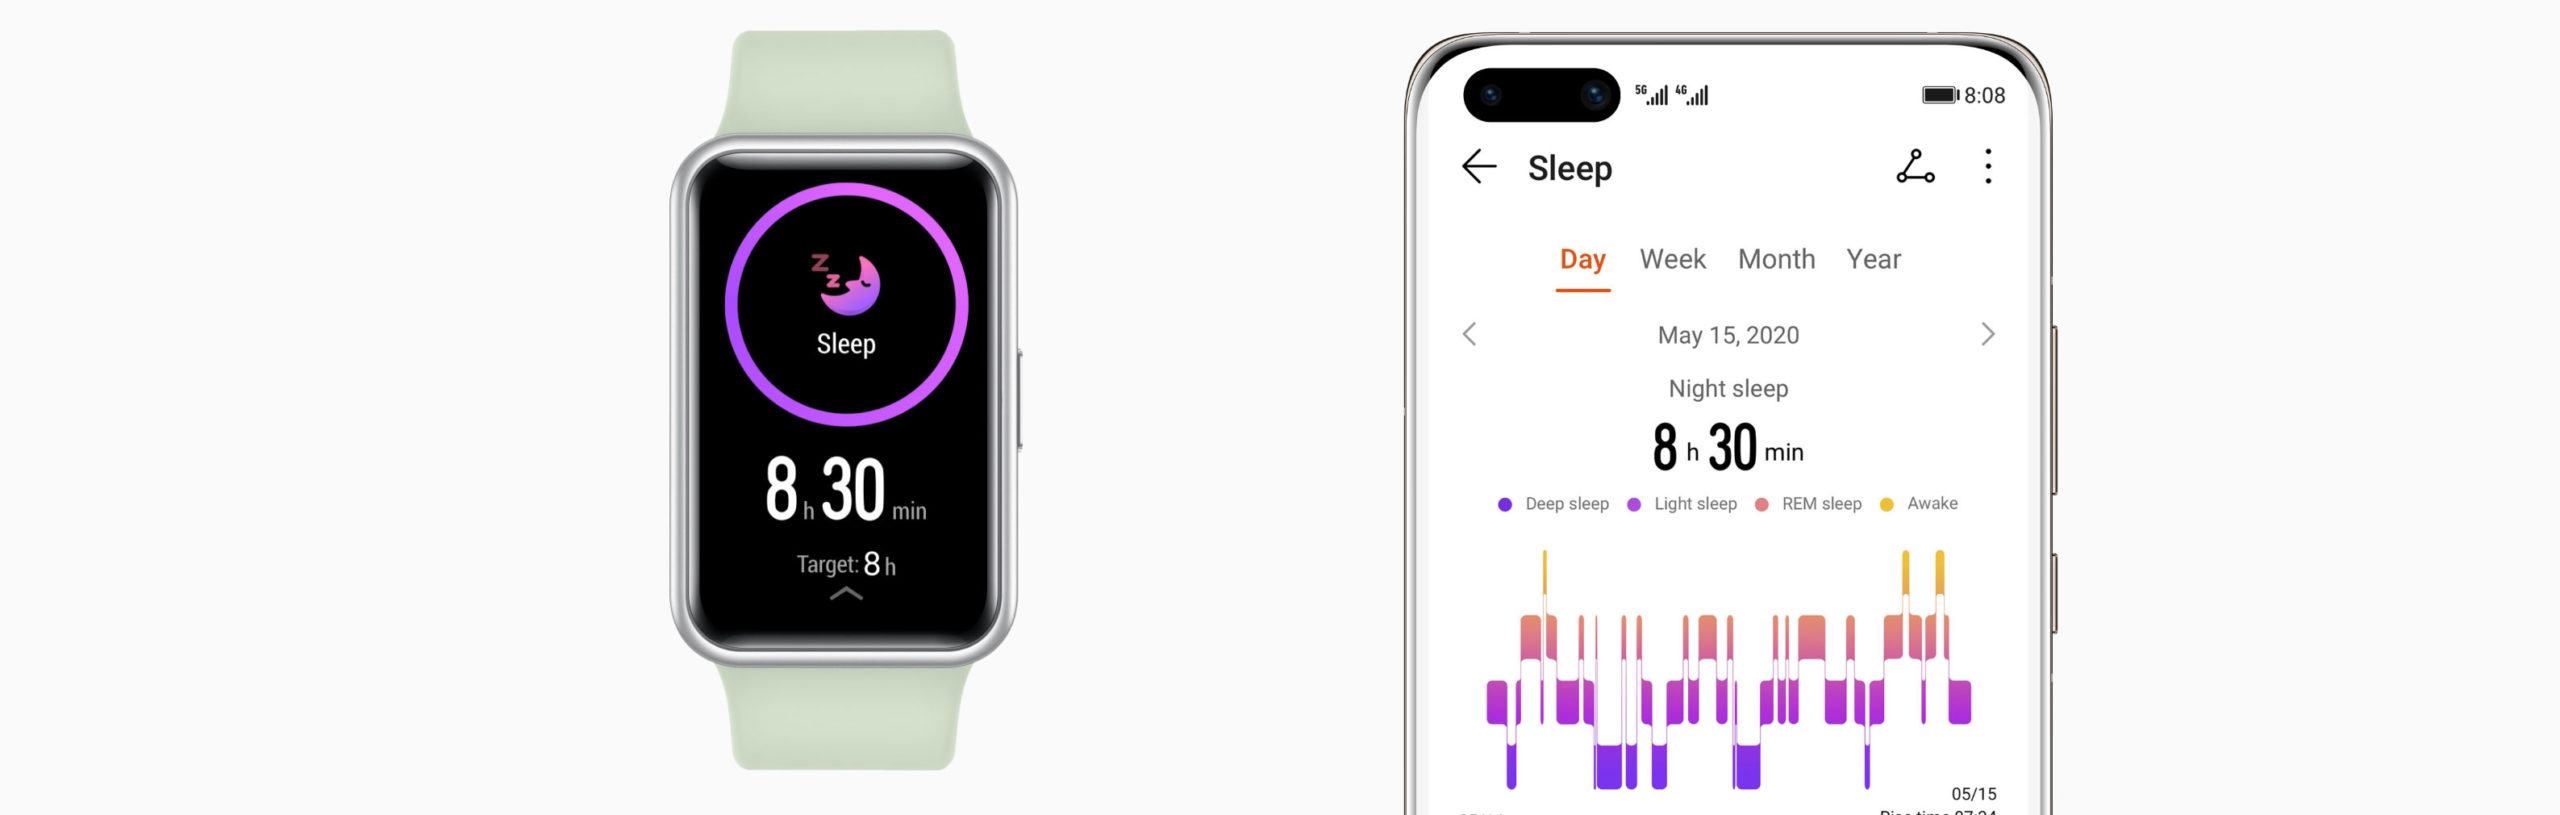 هوآوی Watch Fit ساعت هوشمندی برای جوانی و سلامت